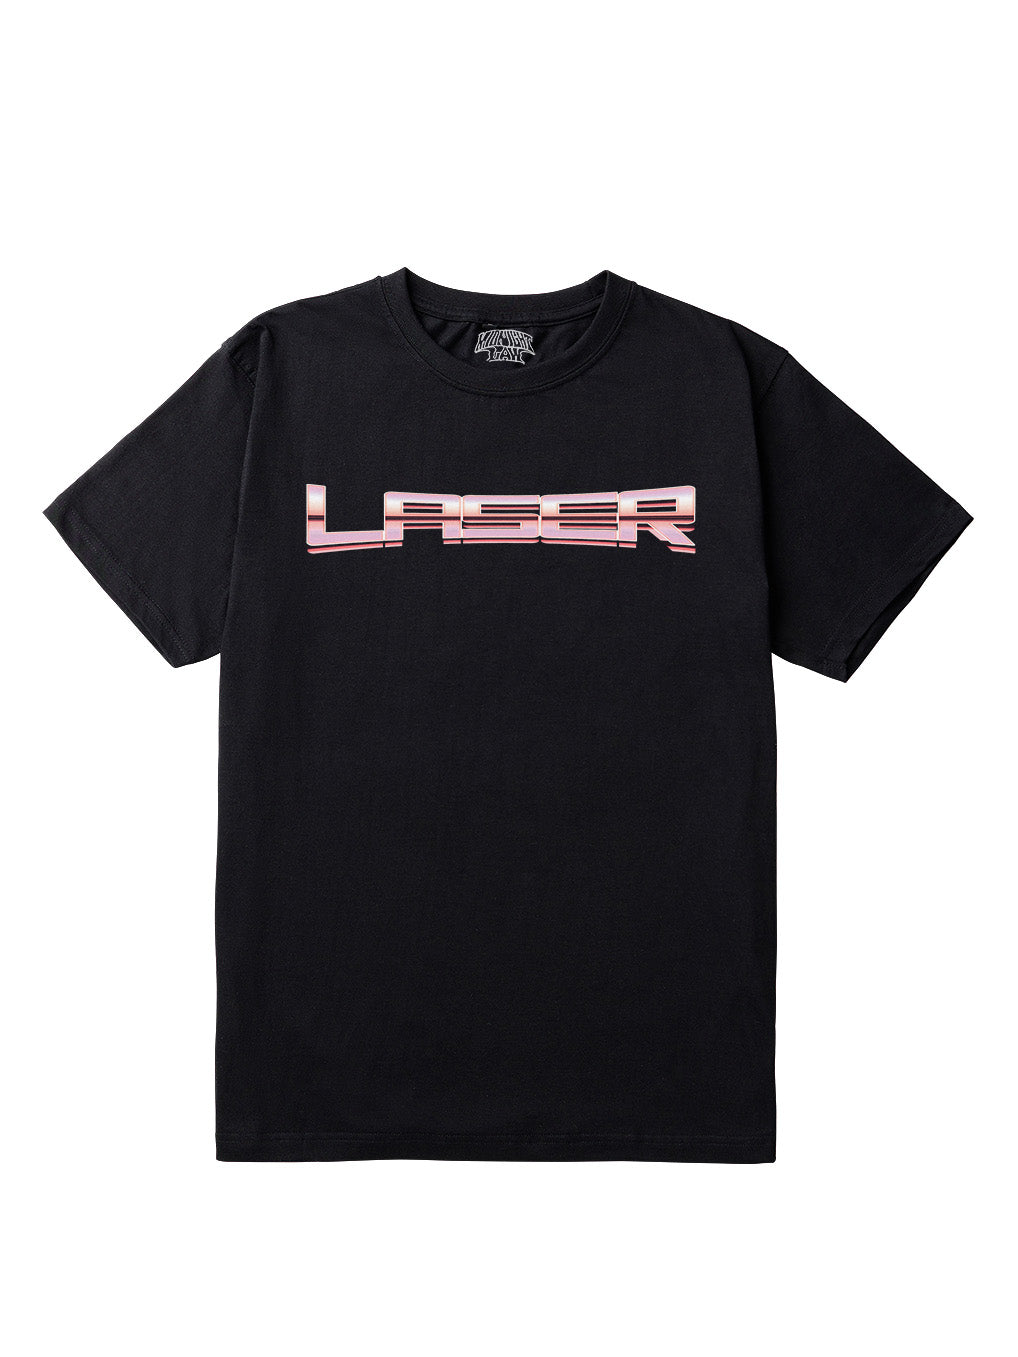 Laser T-Shirt